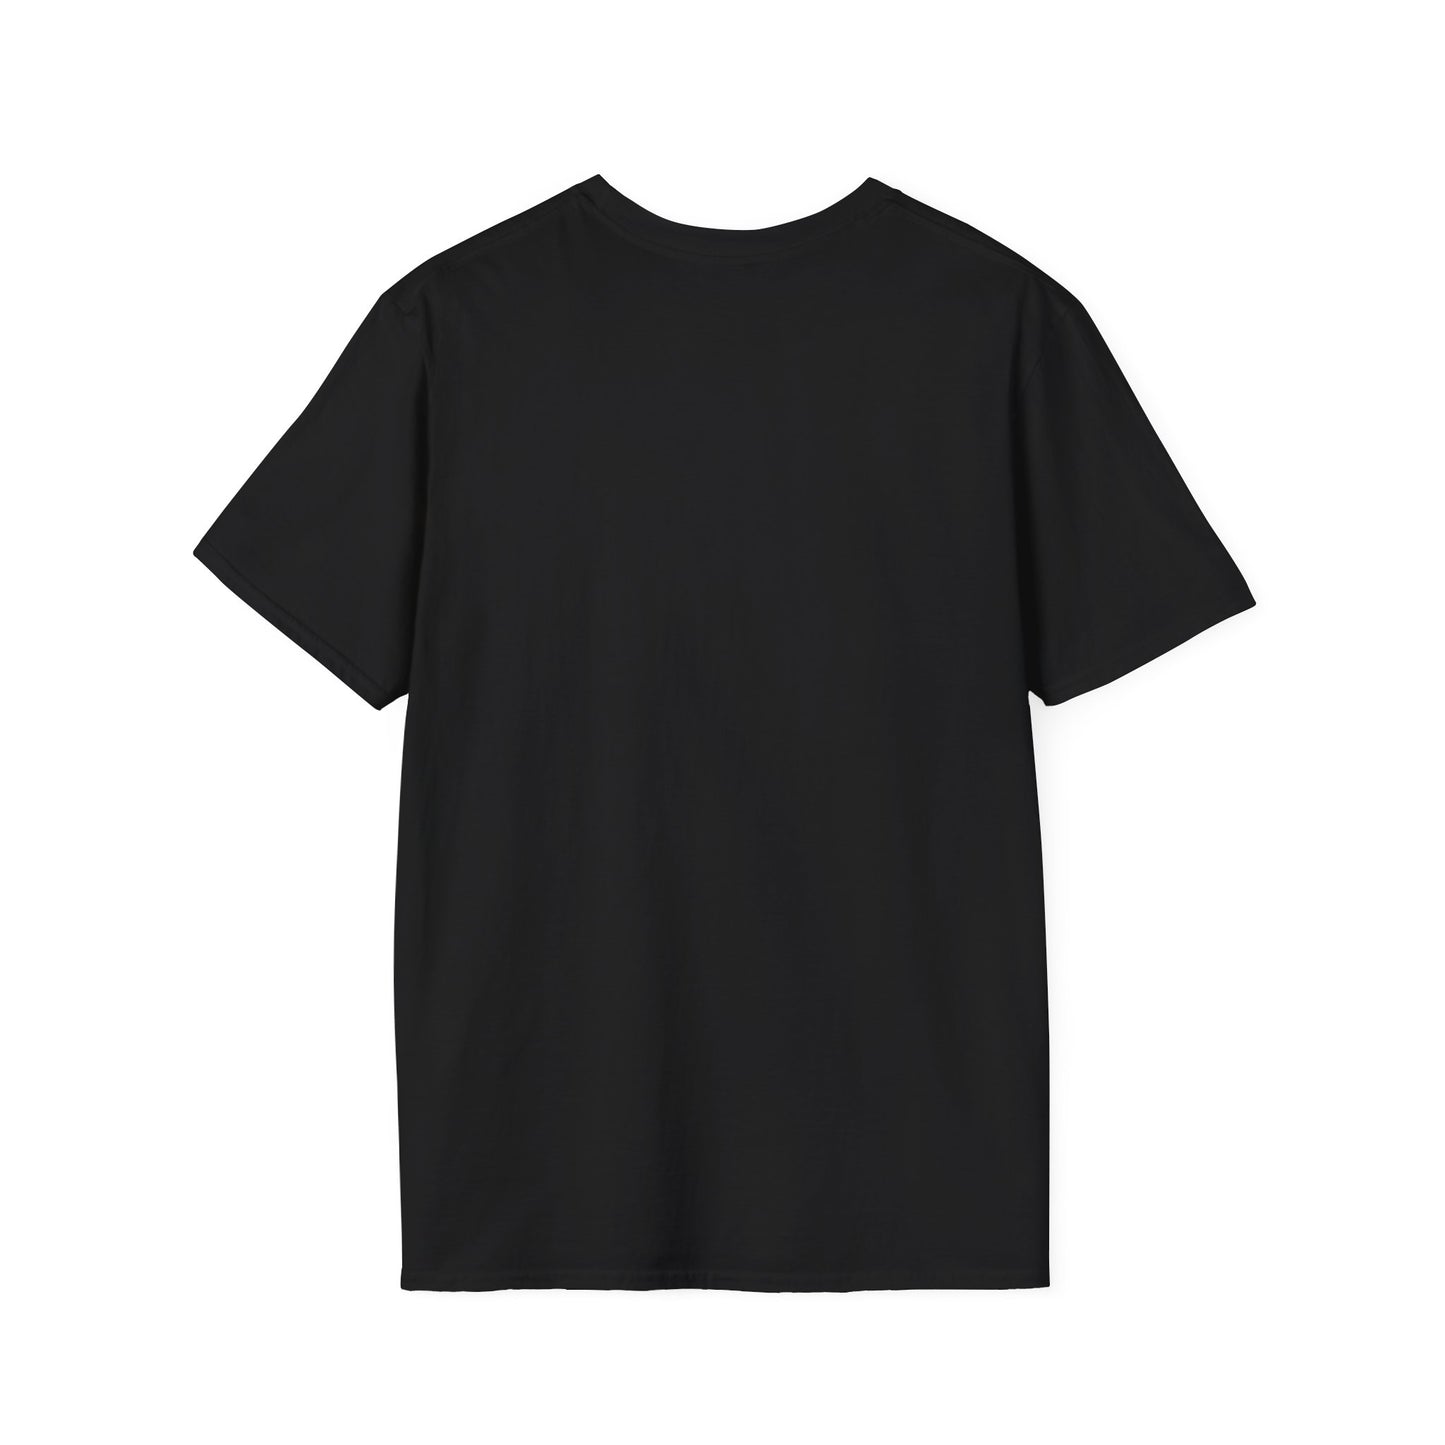 Be Nice Unisex Softstyle T-Shirt